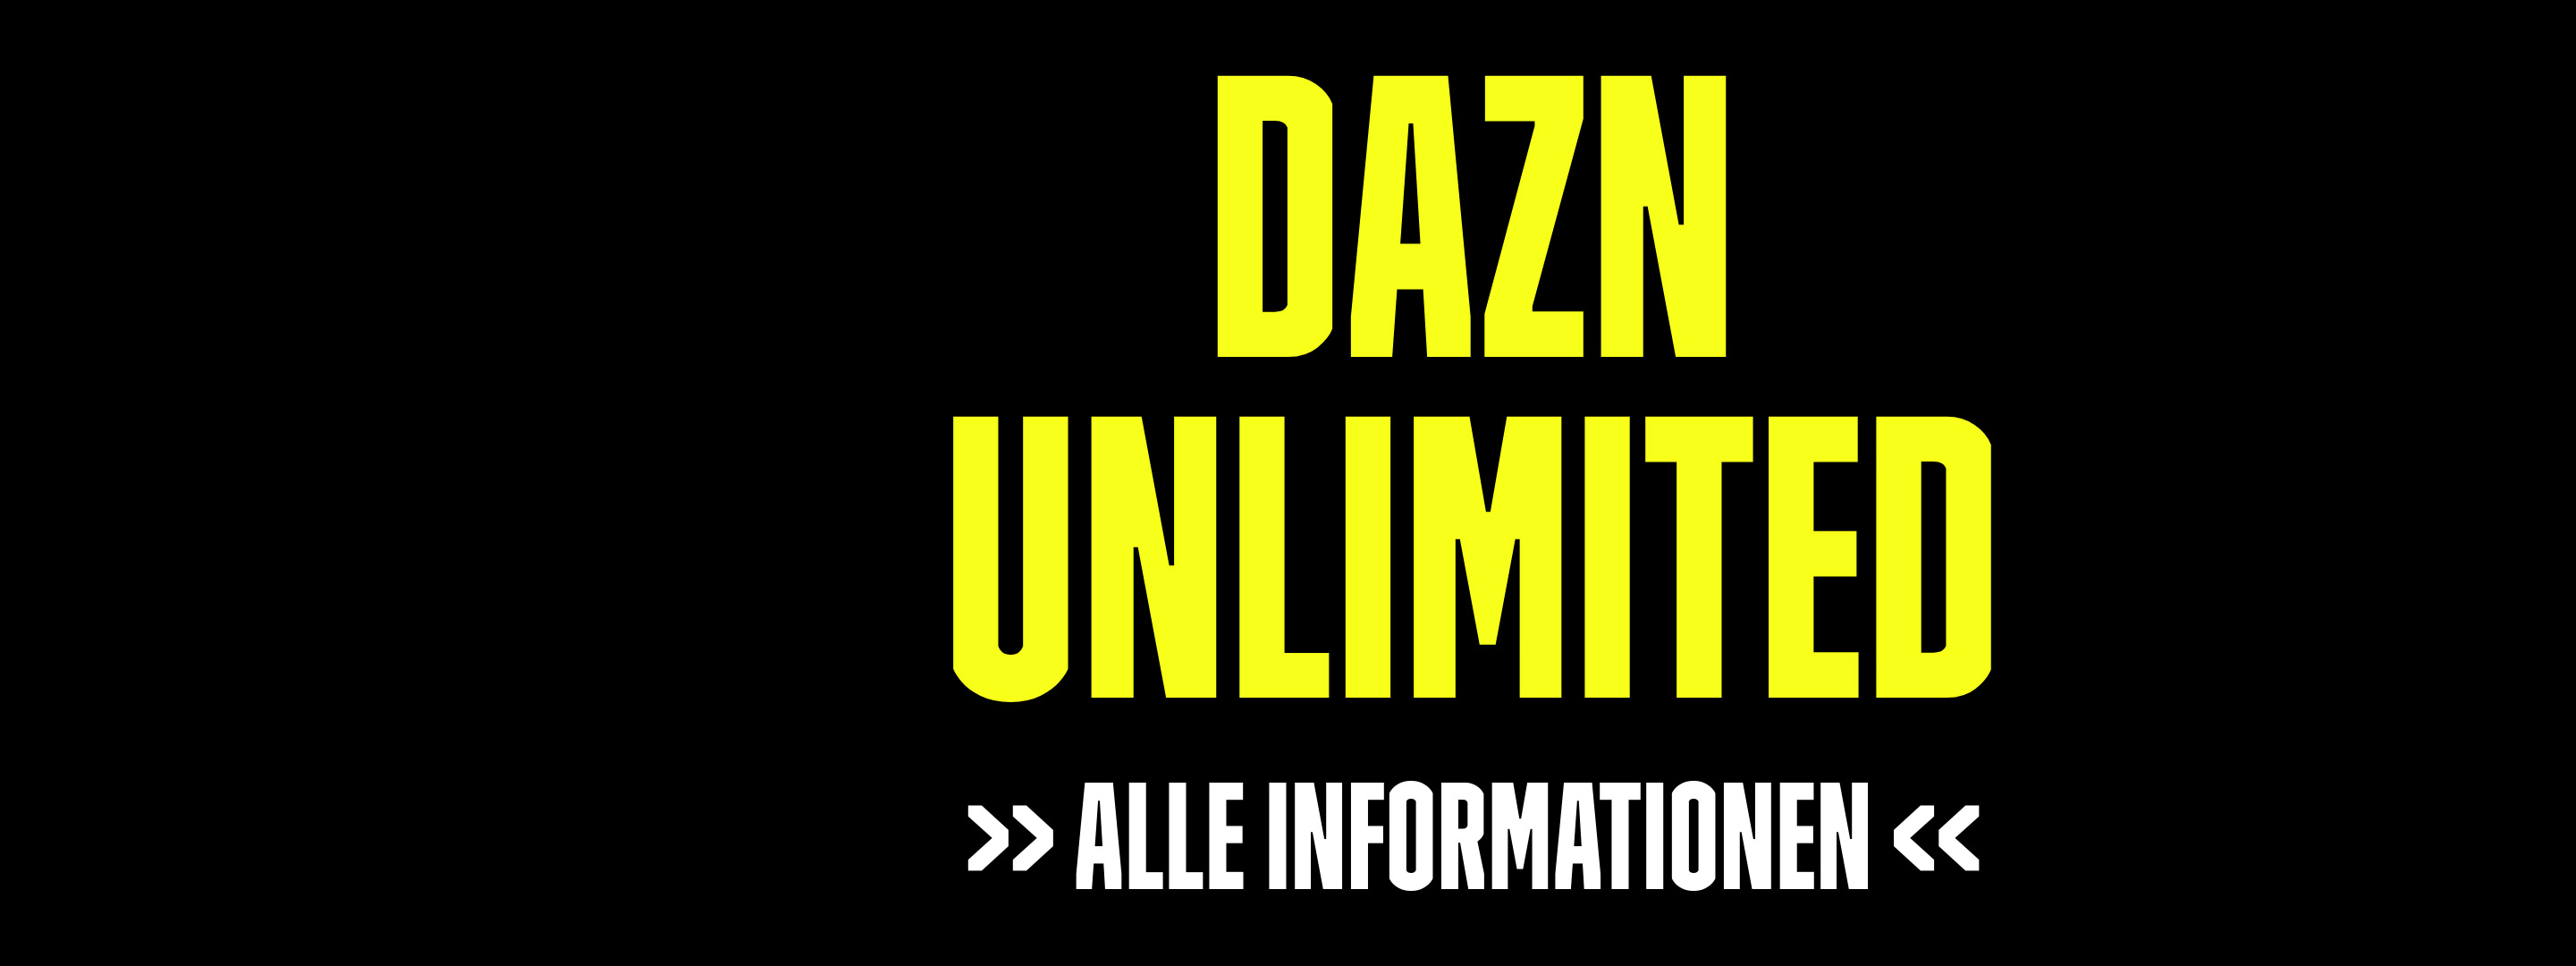 DAZN UNLIMITED Banner #3